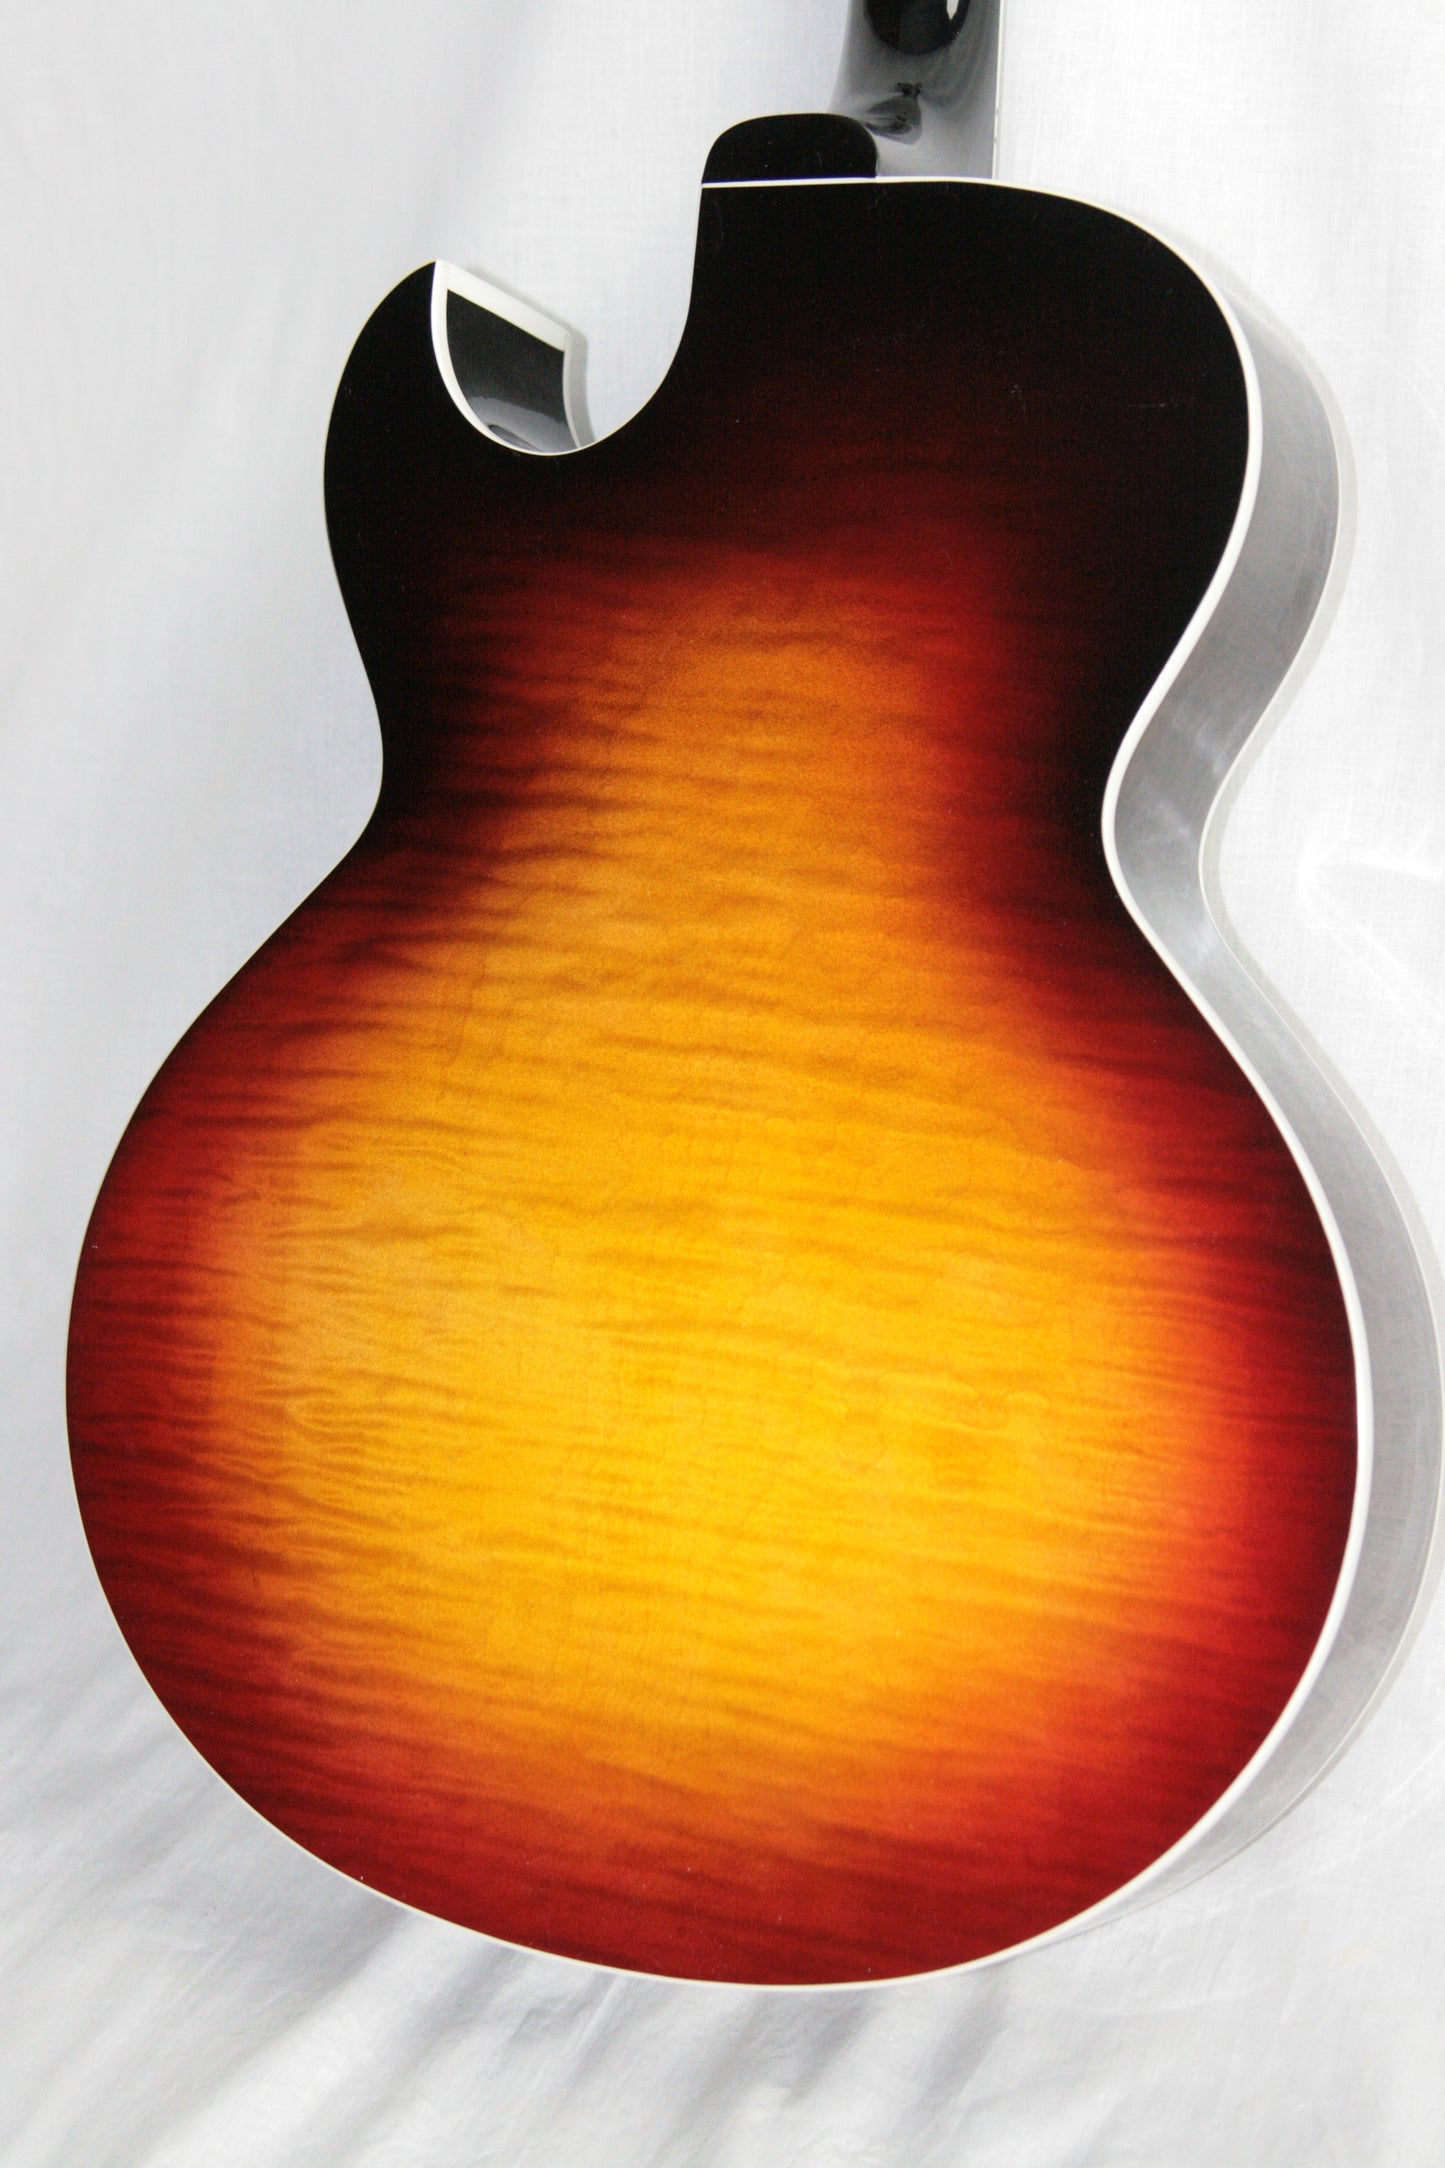 2017 Gibson ES-175 FIGURED Vintage Sunburst Memphis Jazz Archtop 335 355